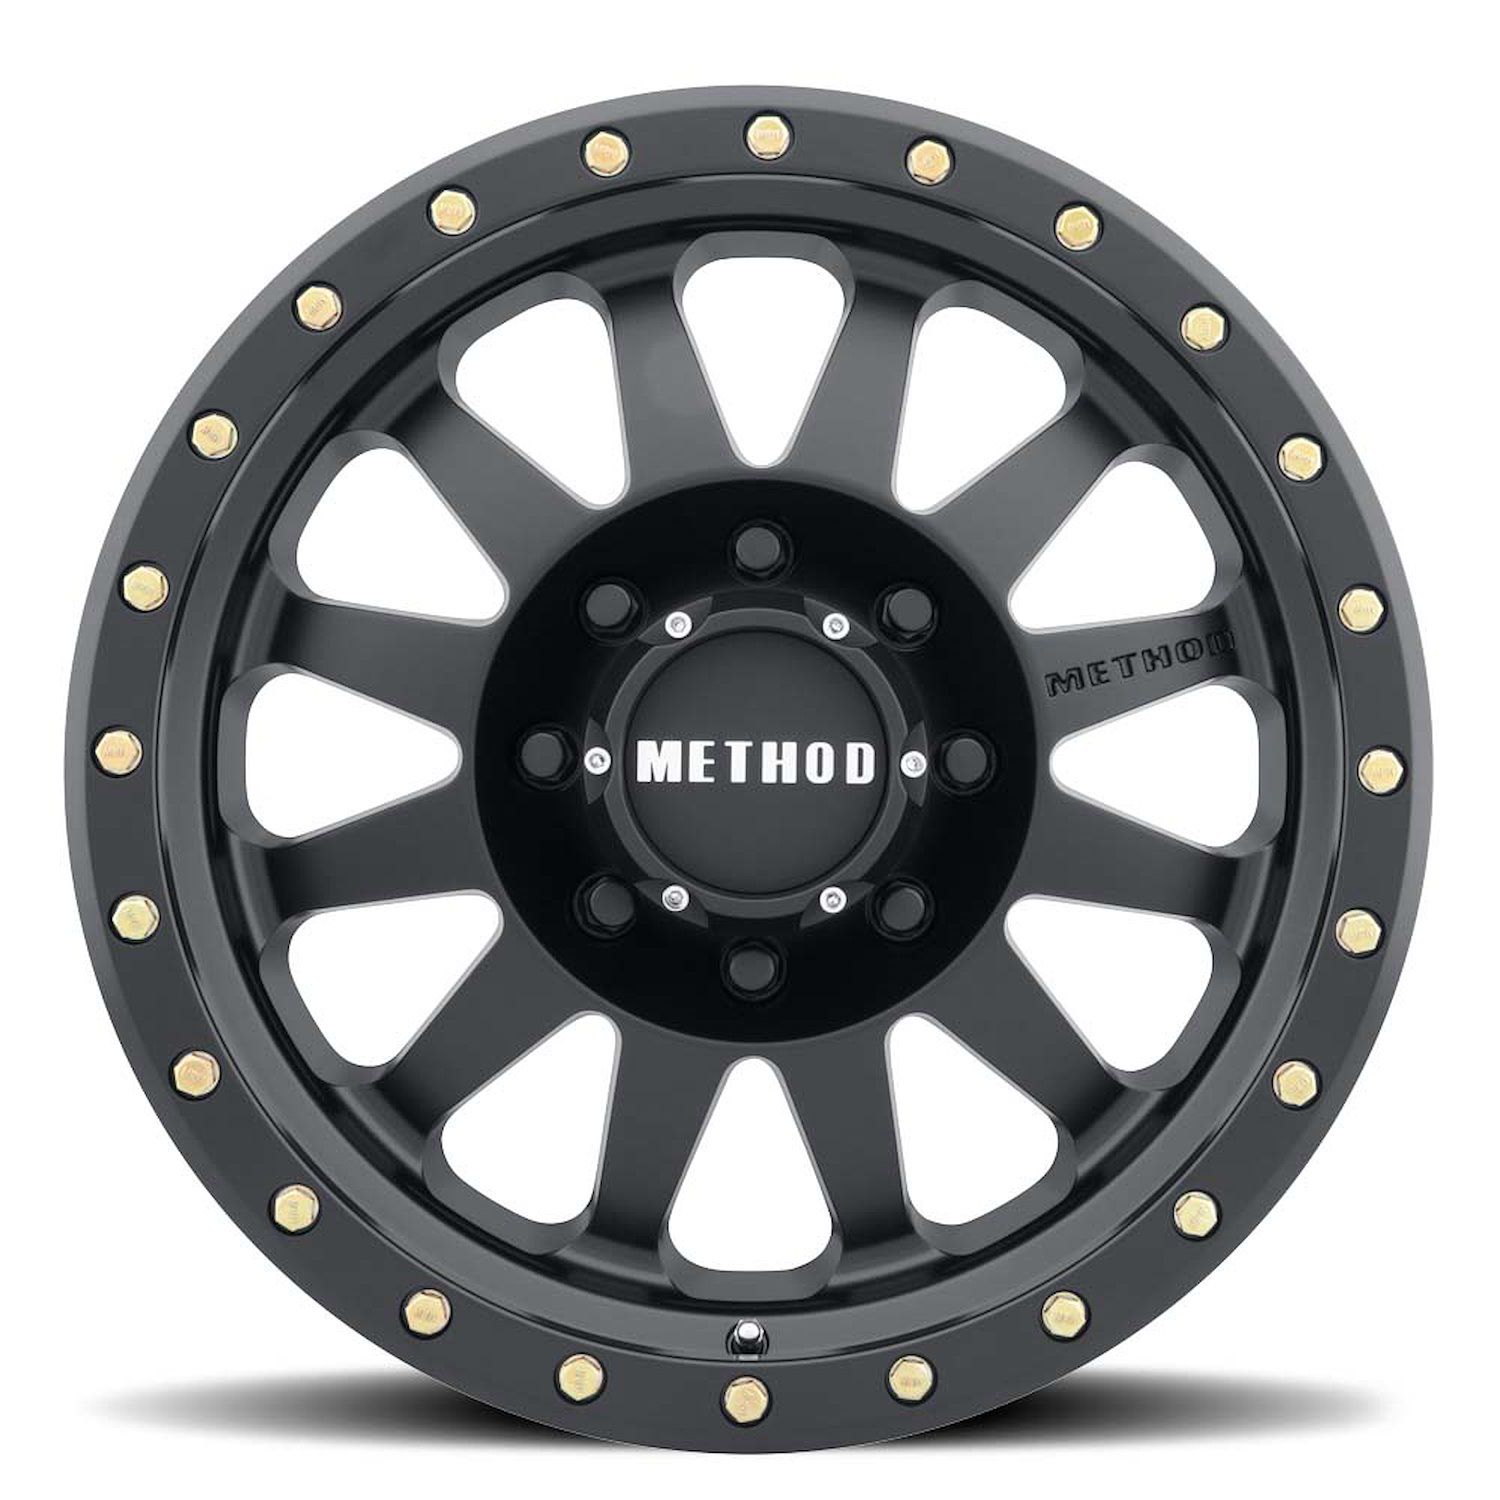 MR30489080512N STREET MR304 Double Standard Wheel [Size: 18" x 9"] Matte Black